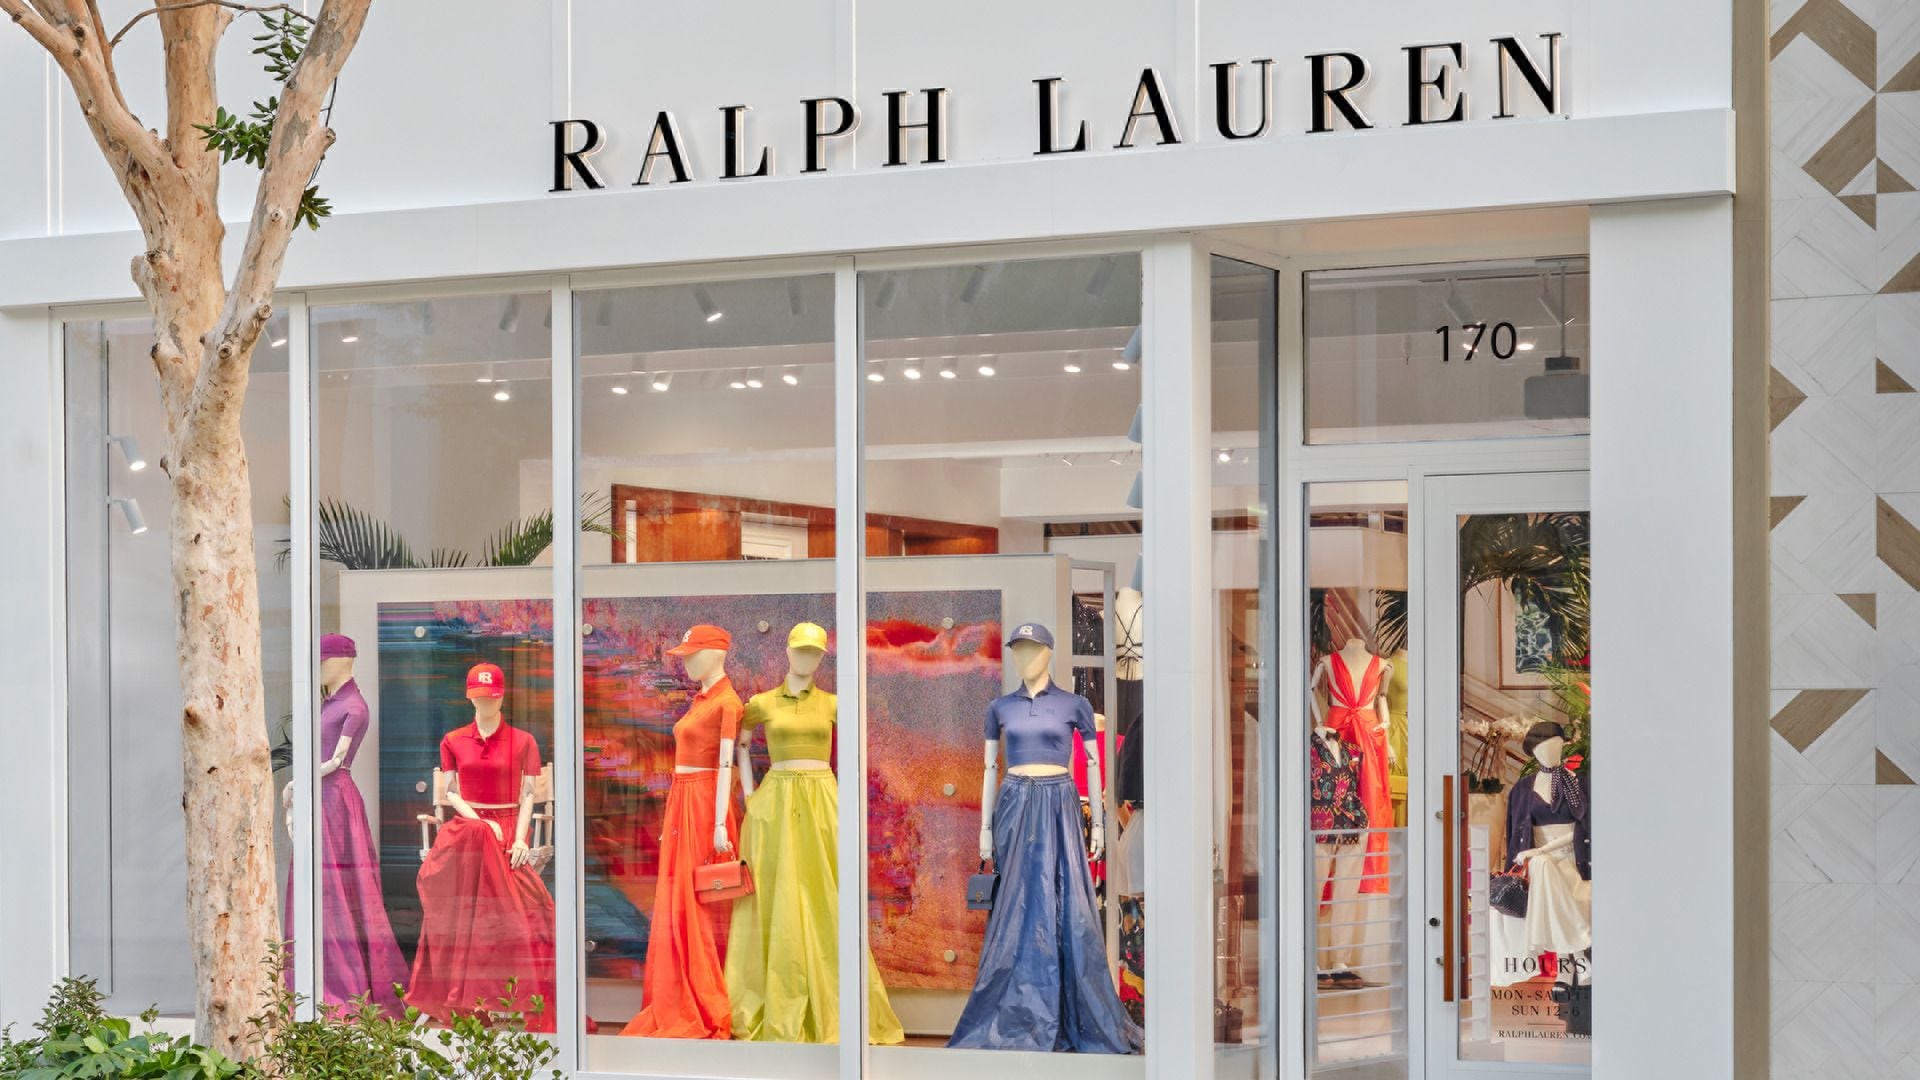 Ralph Lauren brand Analysis .(Identity Understanding) on Behance